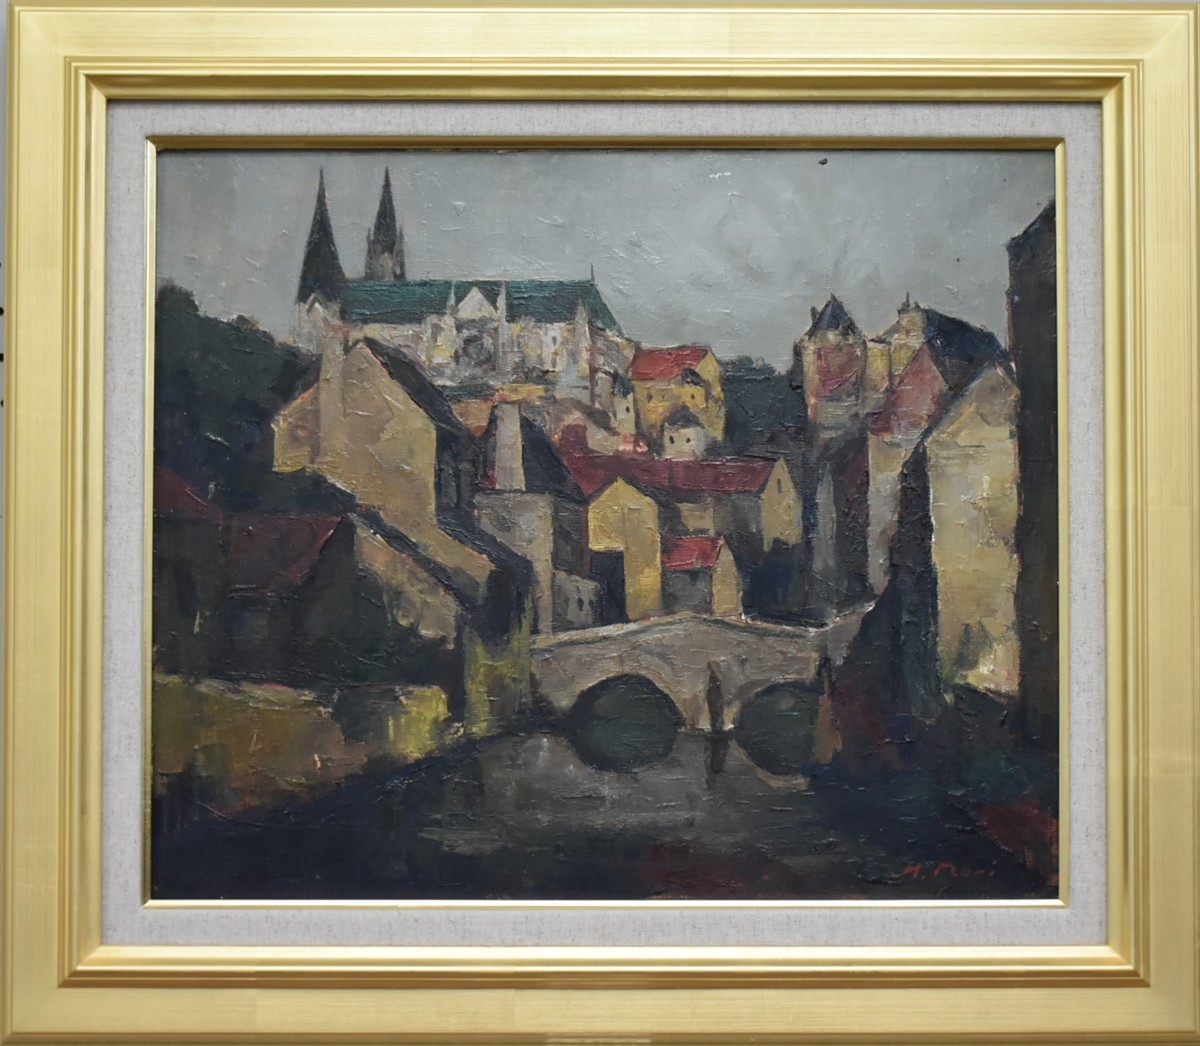 ¡Pinturas al óleo populares recomendadas! Morihisa No. 8 Chartres Waterside Galería Masamitsu, cuadro, pintura al óleo, Naturaleza, Pintura de paisaje